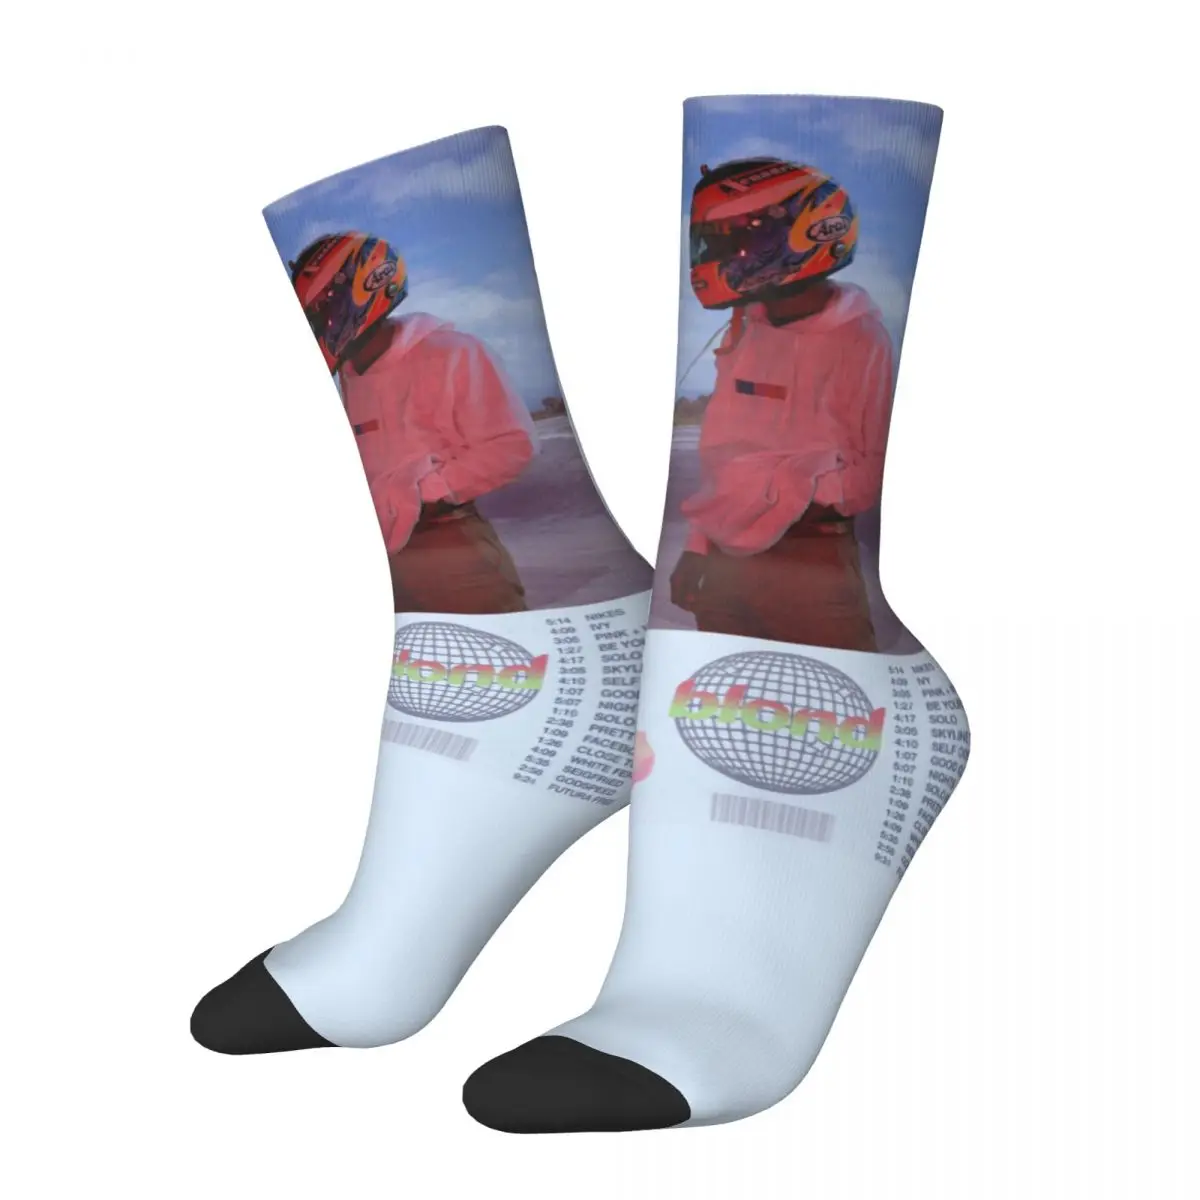 

Blond Frank O-ocean Rapper Theme Design Crew Socks Merchandise for Female Cozy Stockings